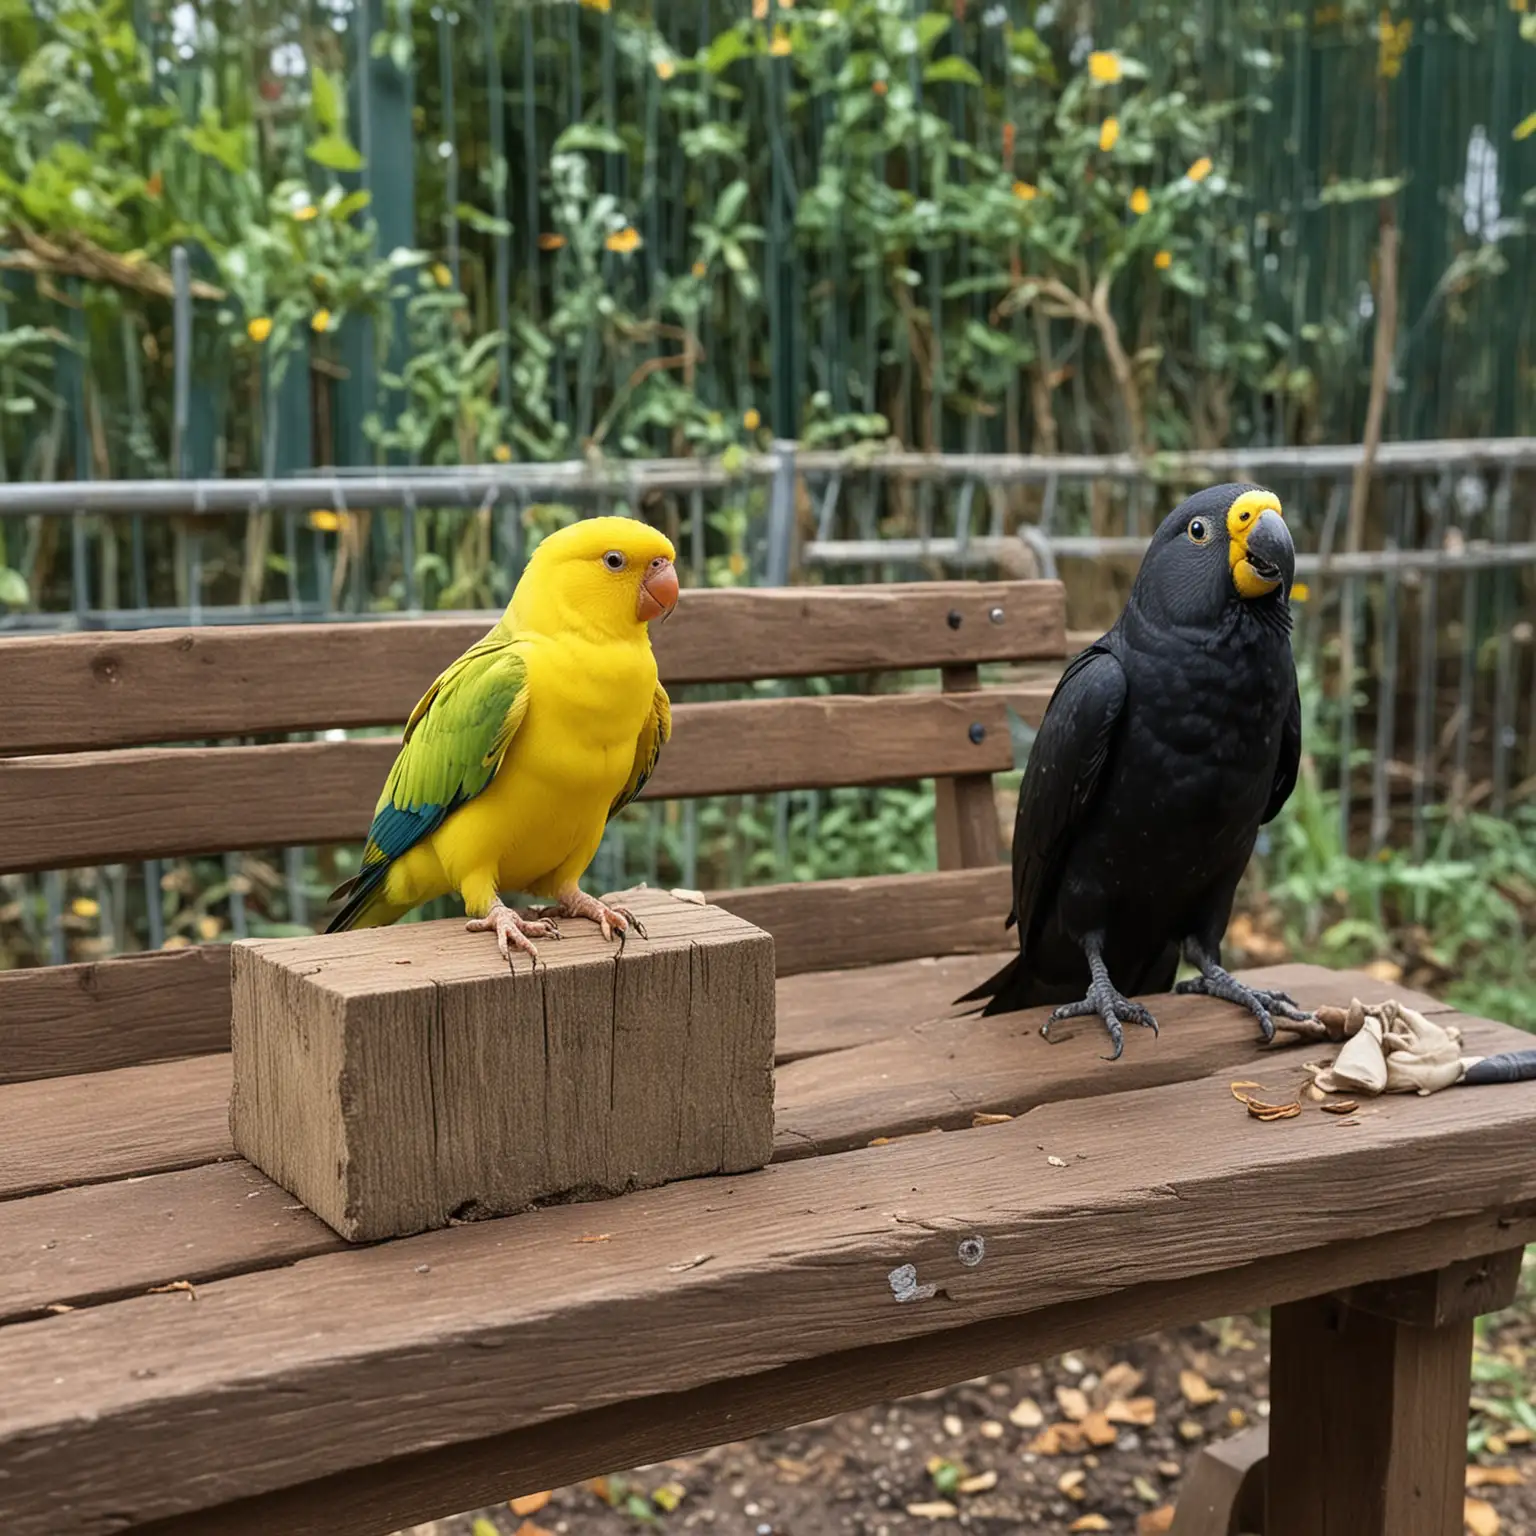 на скамейке сидят кот, ворона и желтый попугайчик